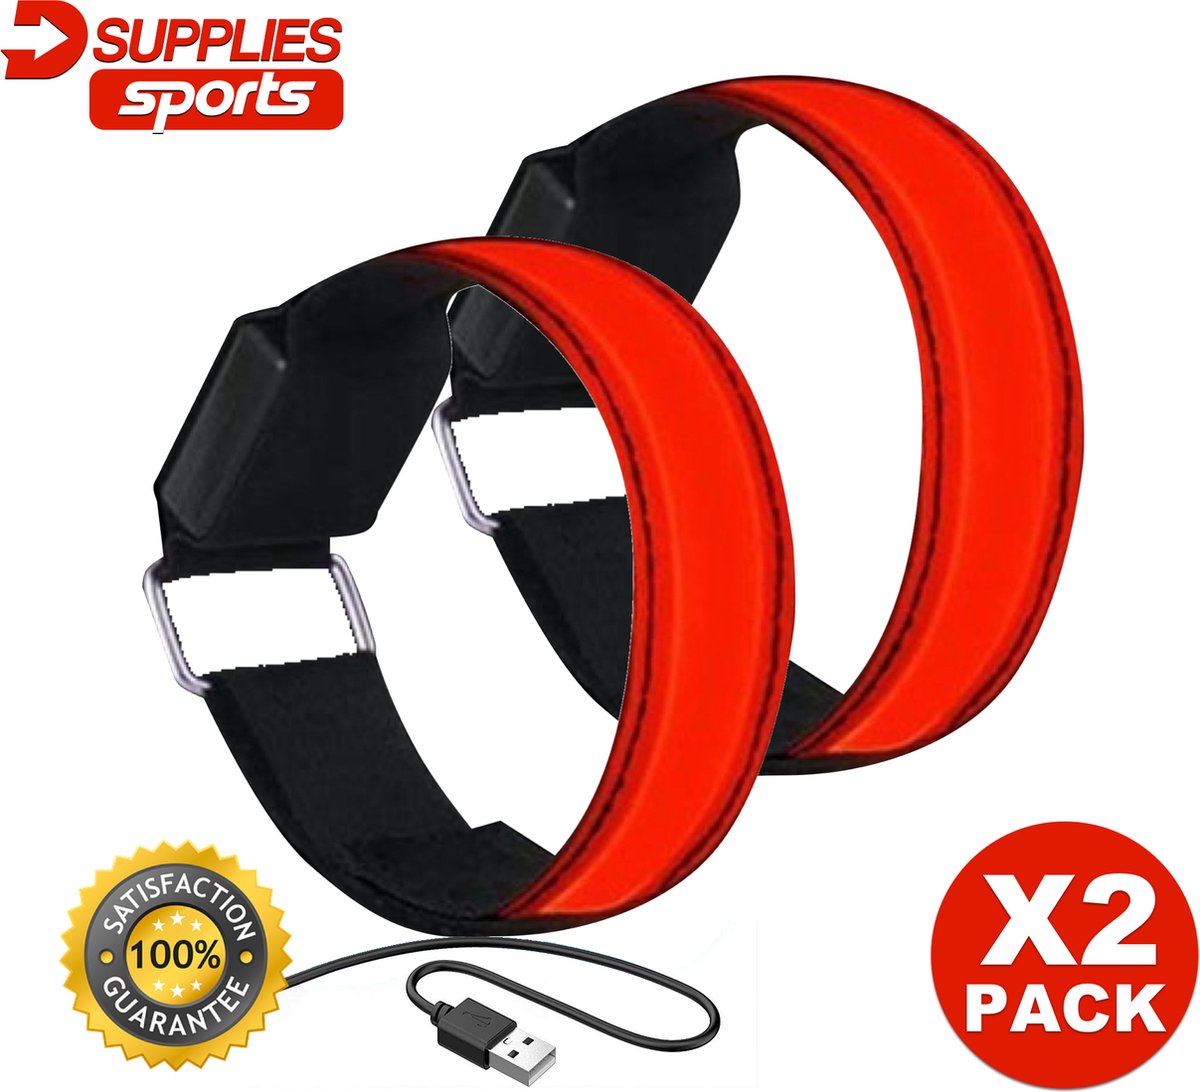 D-Supplies® | LED Veiligheidsband - Hardloop verlichting - 2-pack - Rood - oplaadbaar met USB - verlichting - reflecterend - hardlopen - fietsen - sporten